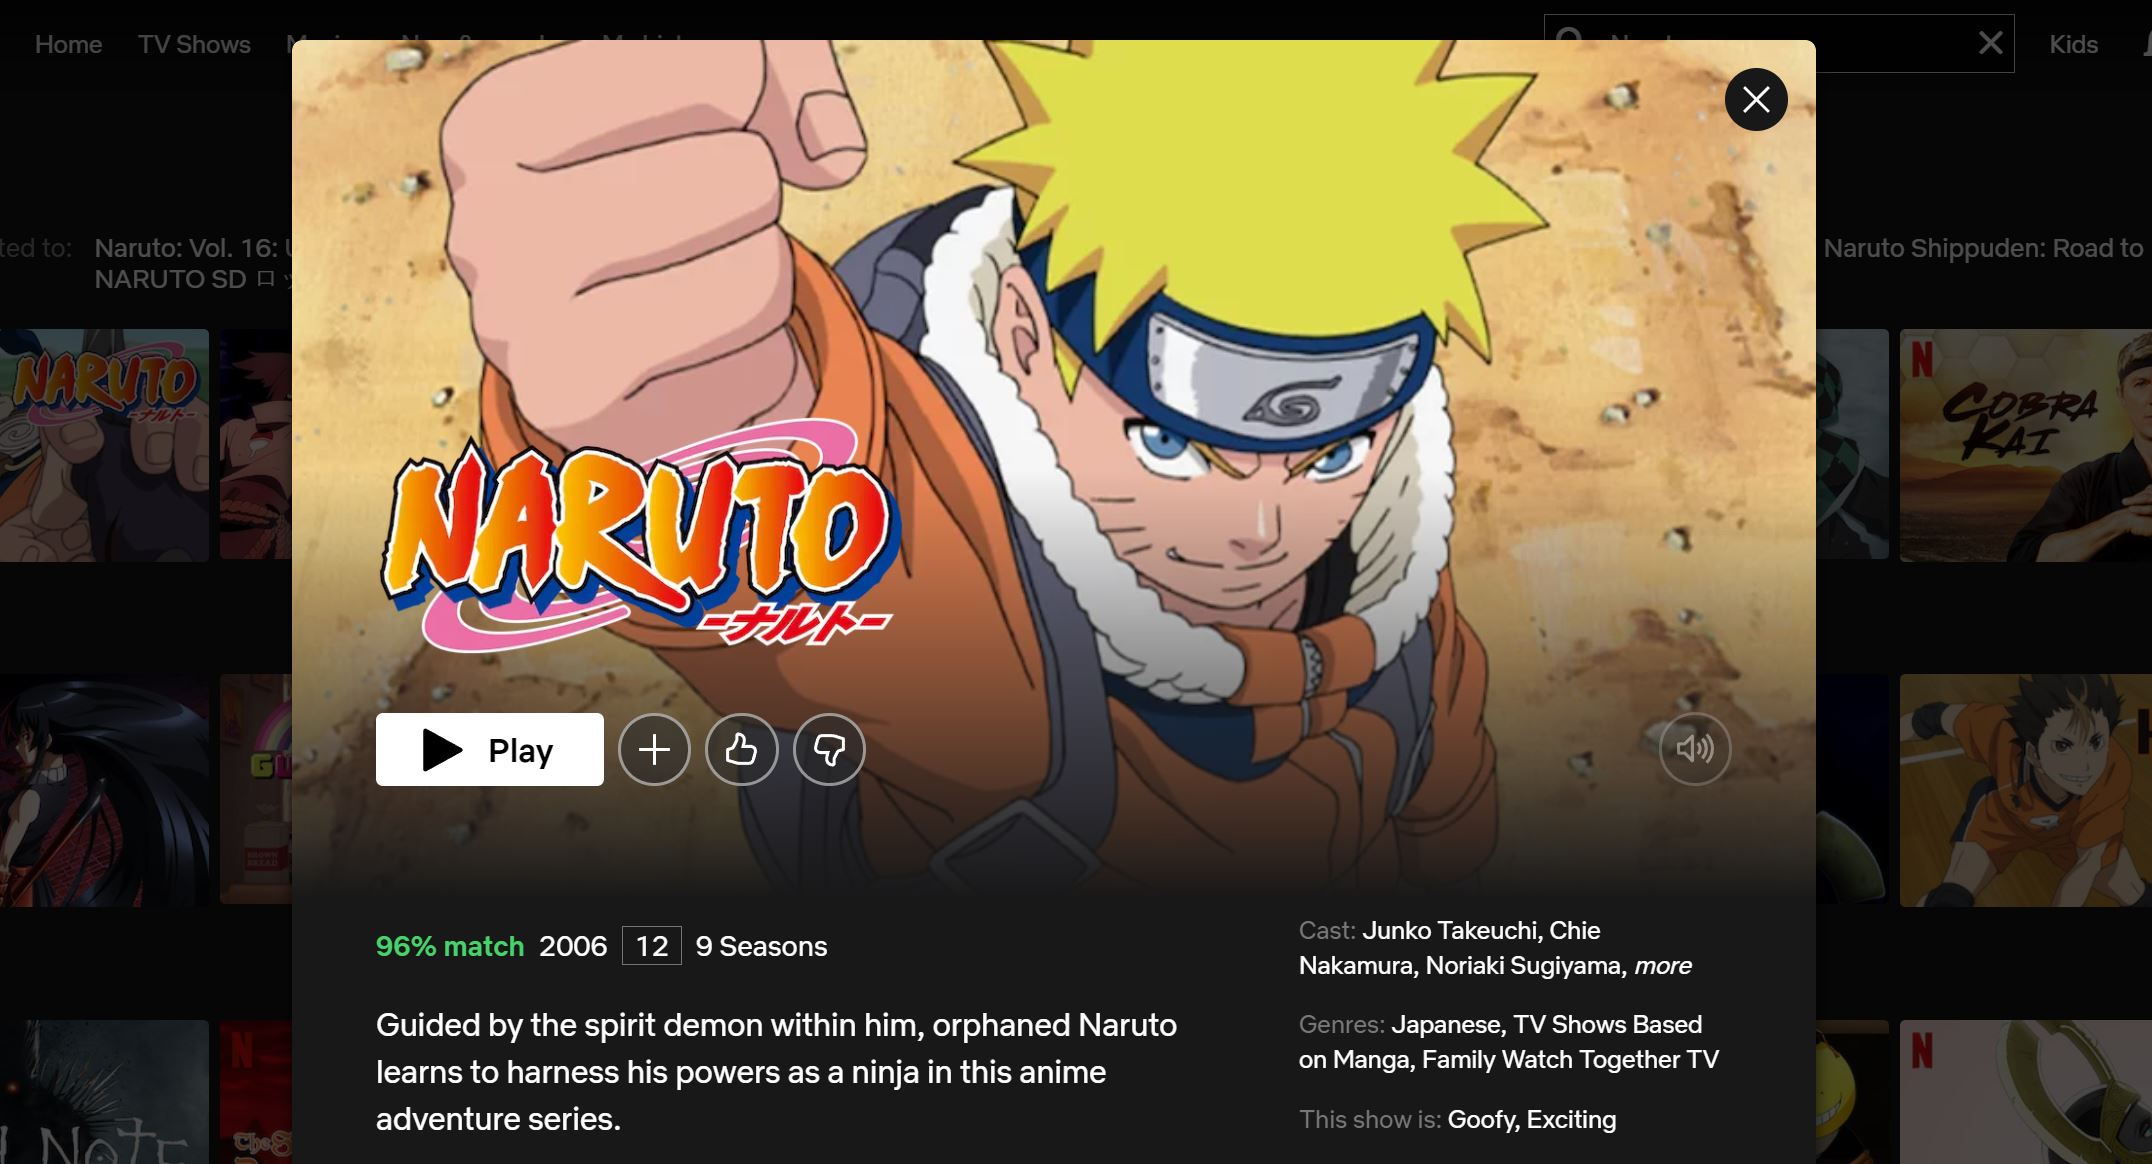 Does Netflix UK have Naruto?